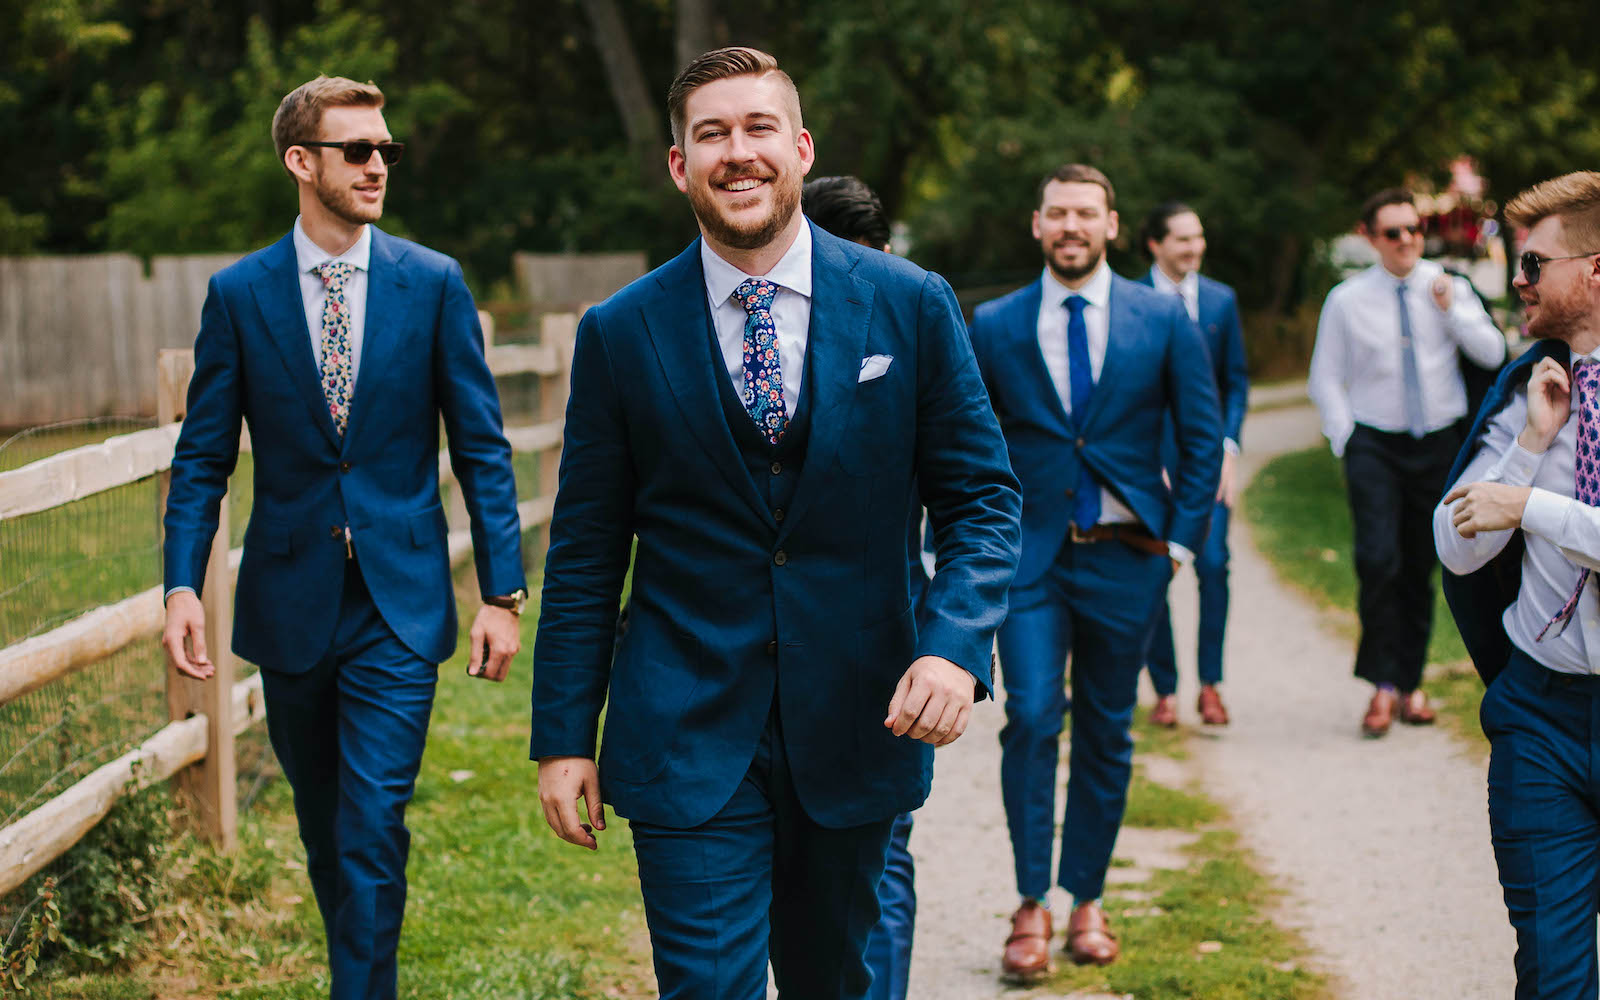 Groom and groomsmen in custom ties and blue suits walking.